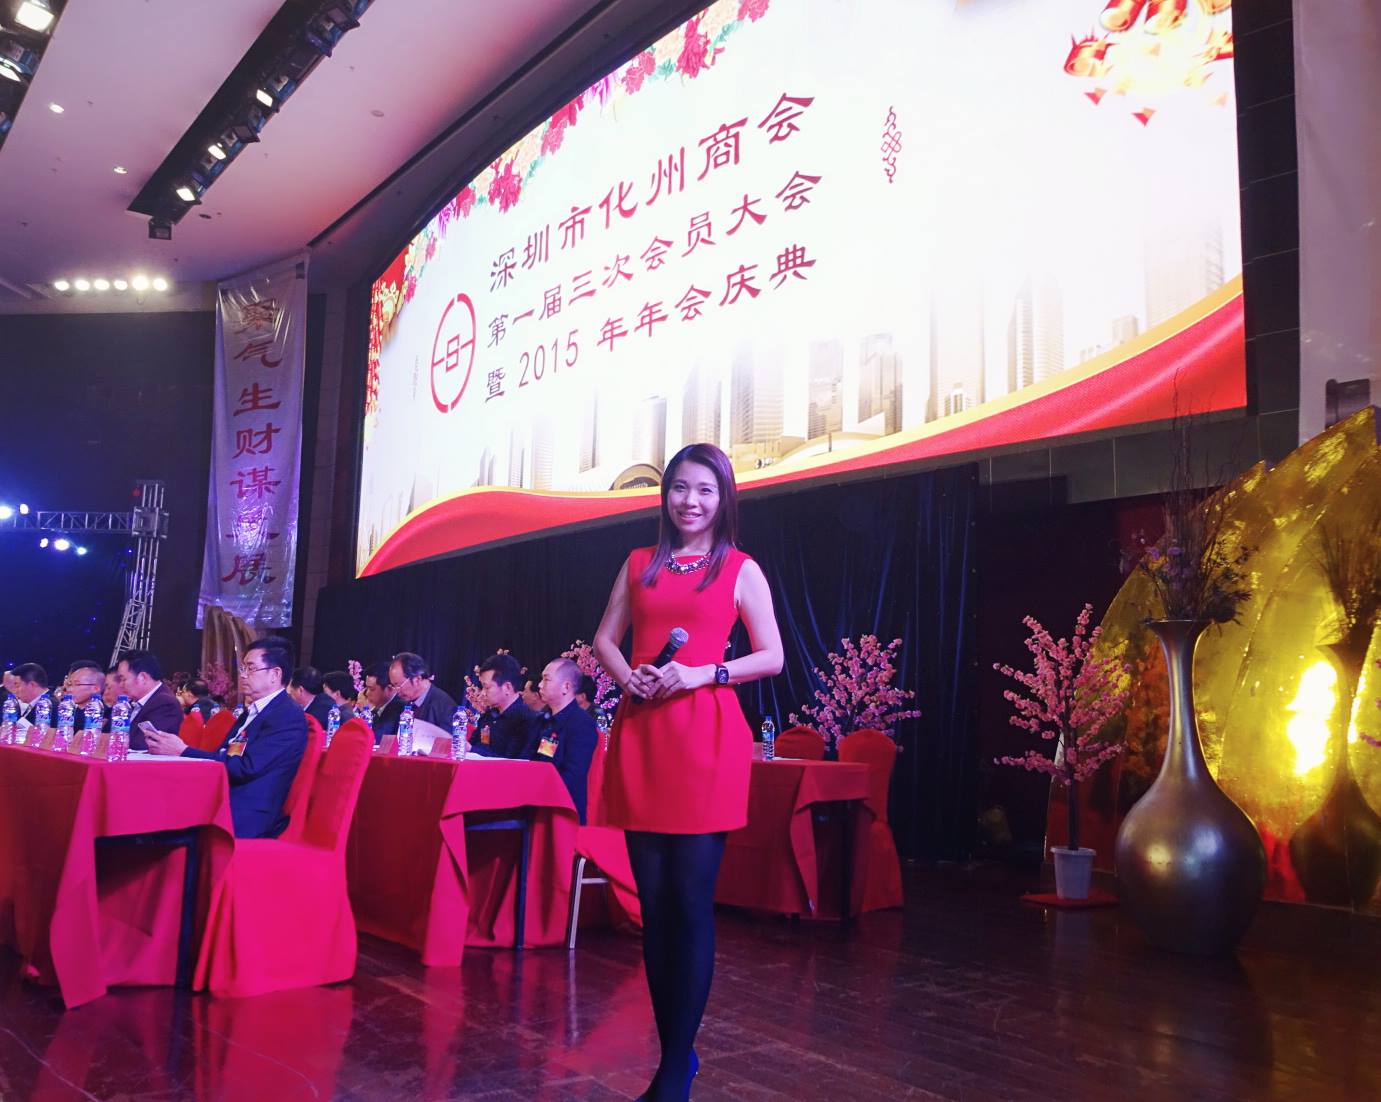 梁雯婷 Agnes Leung之司儀主持紀錄: 深圳市化洲商會晚宴